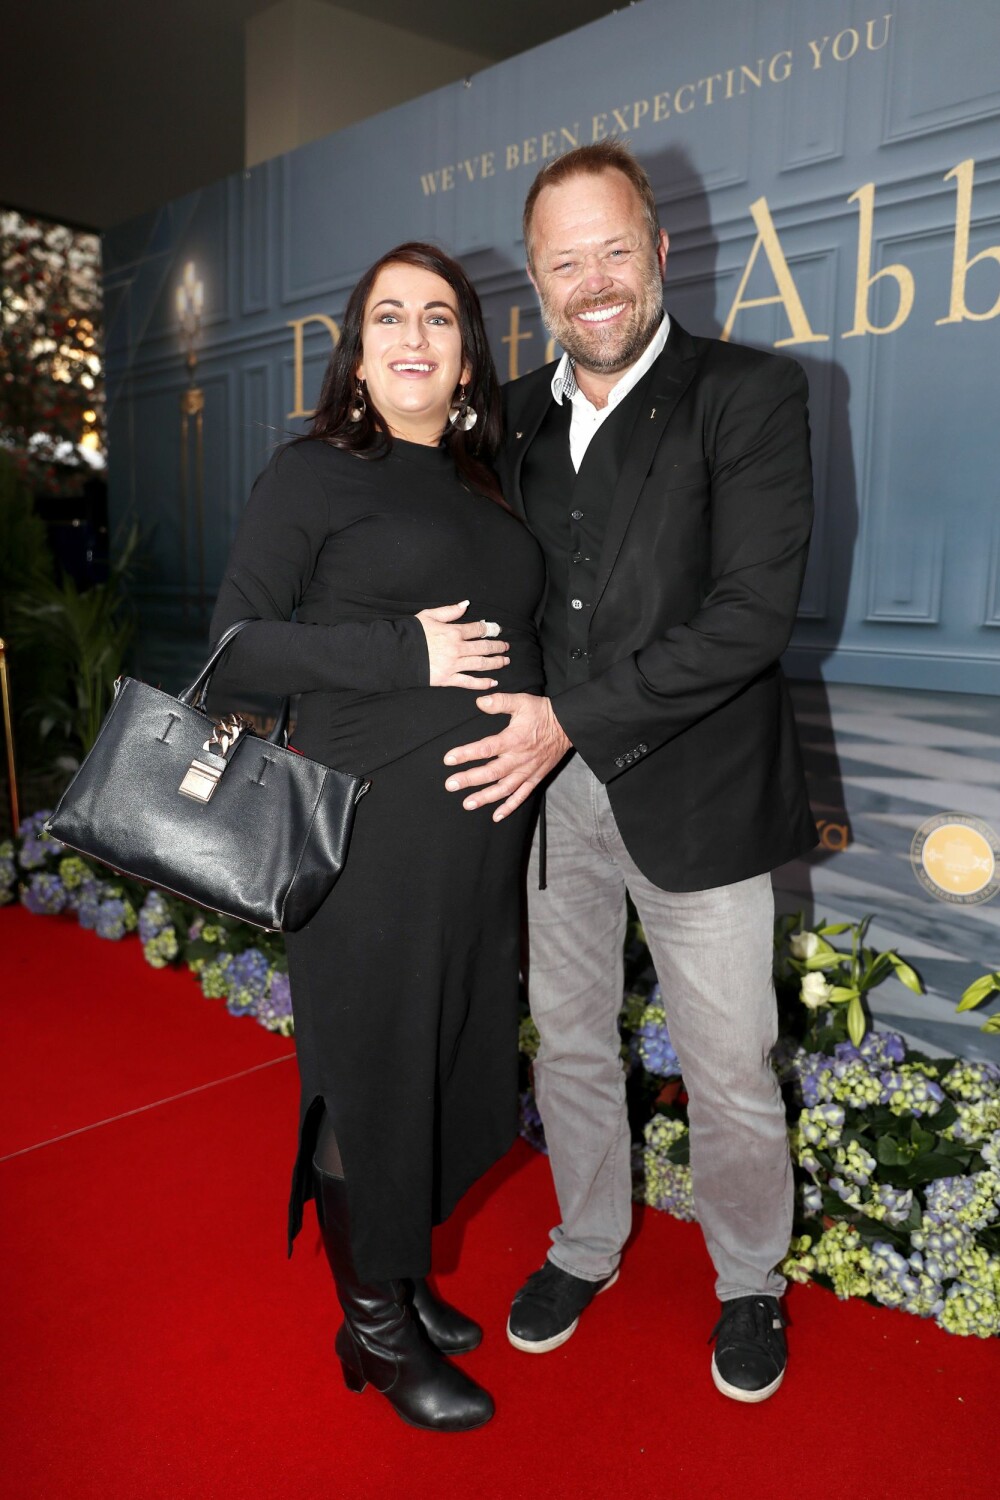 BABYLYKKE: TV-profil Asgeir Borgemoen venter sitt første barn med samboer Heidi i begynnelsen av januar.